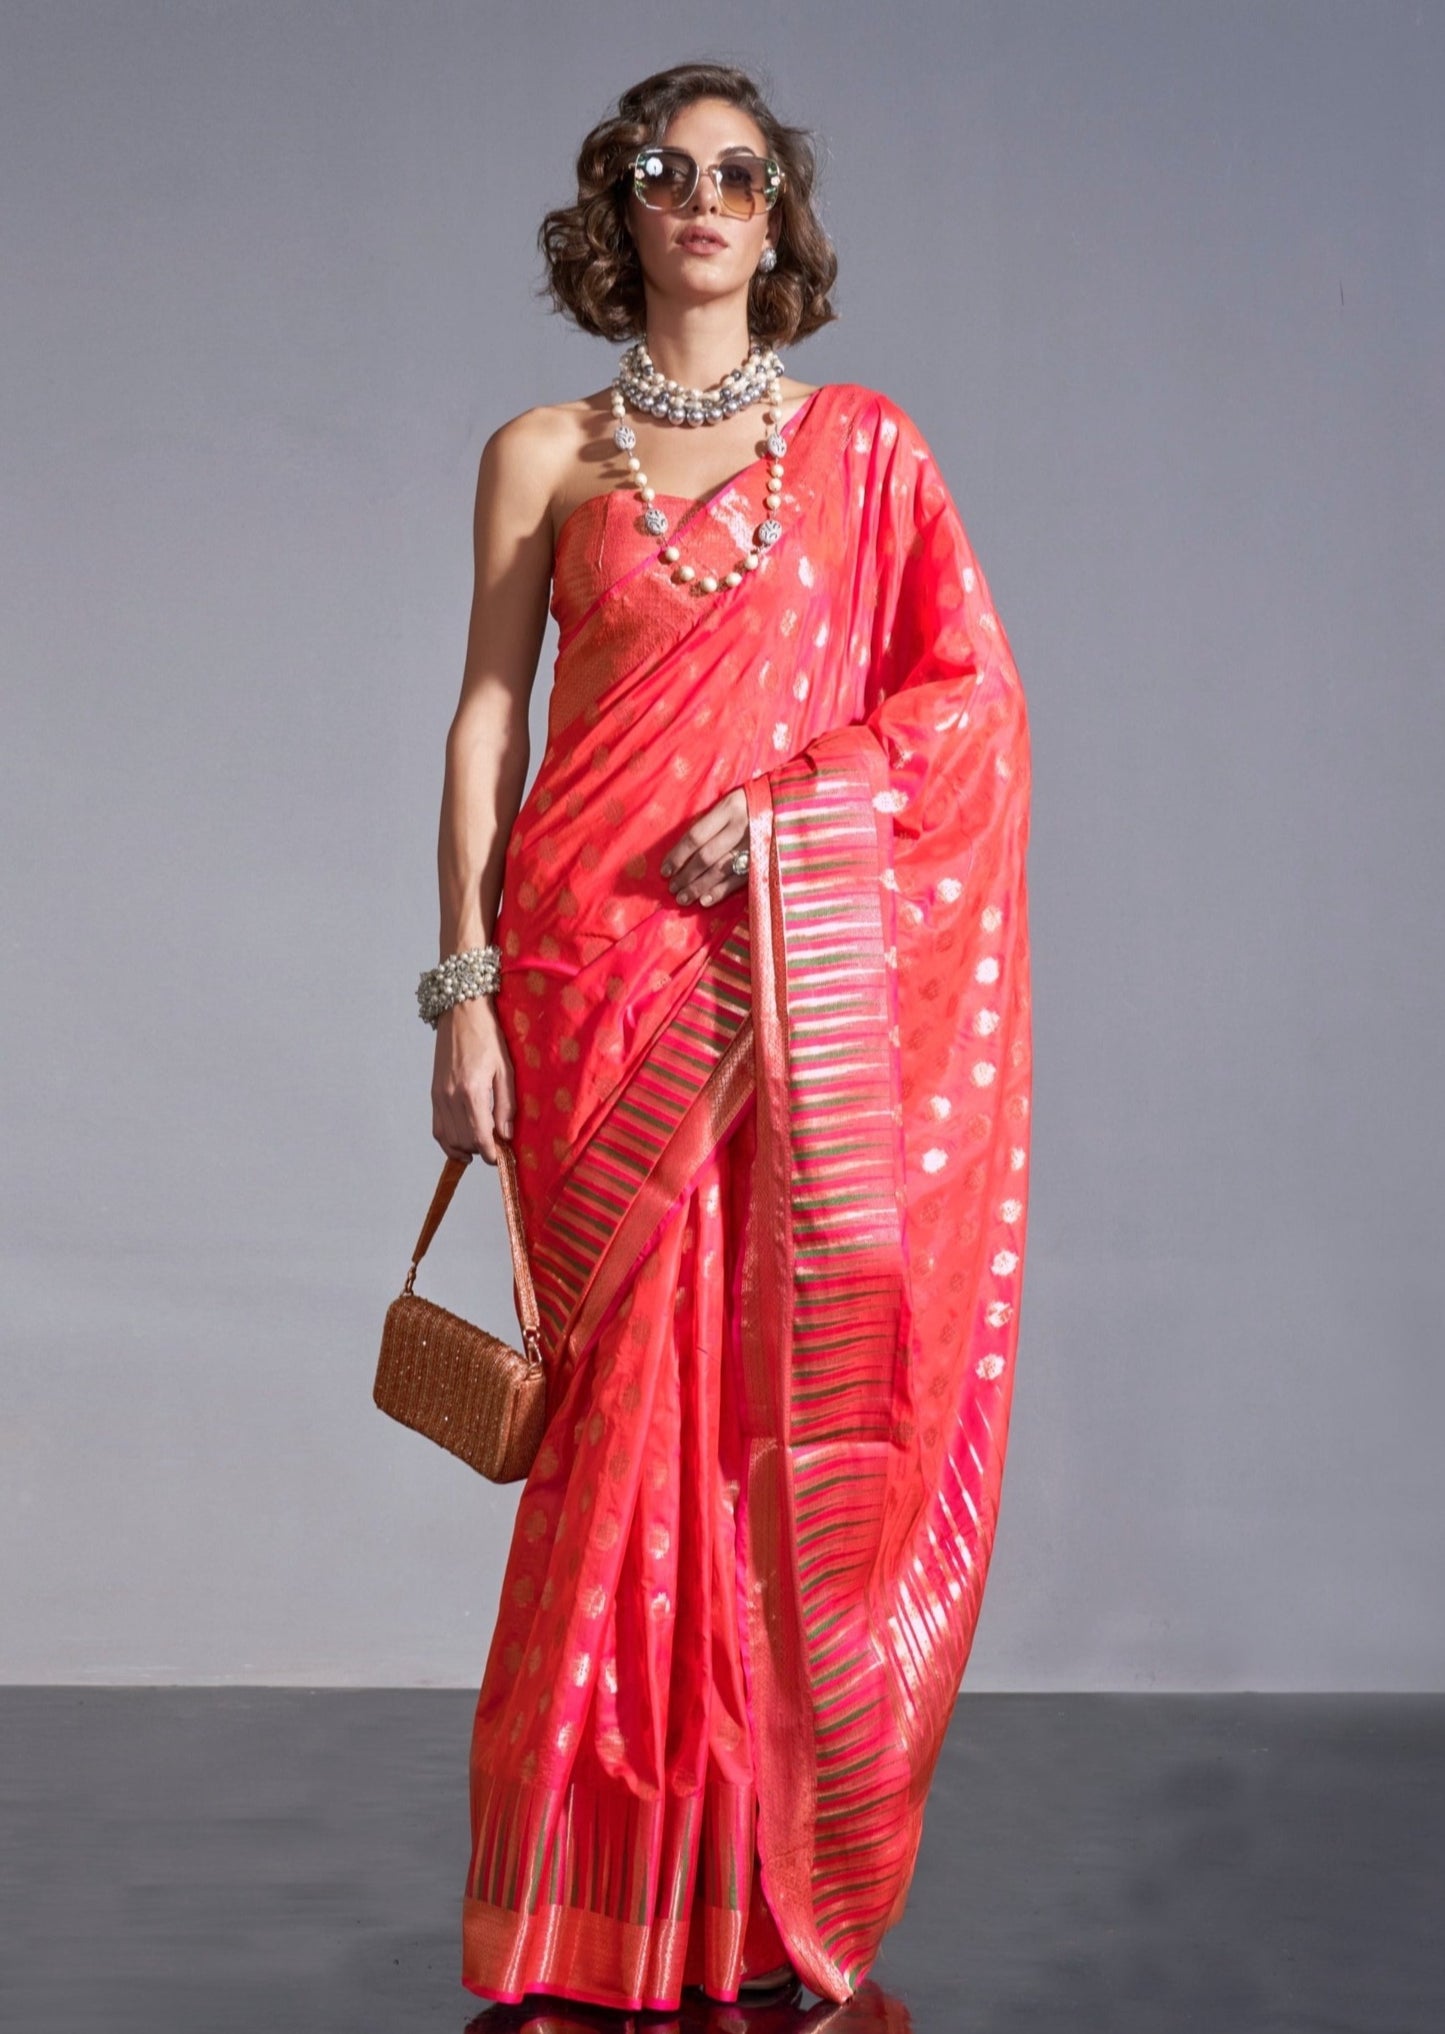 Soft banarasi handloom red orange saree online shopping.